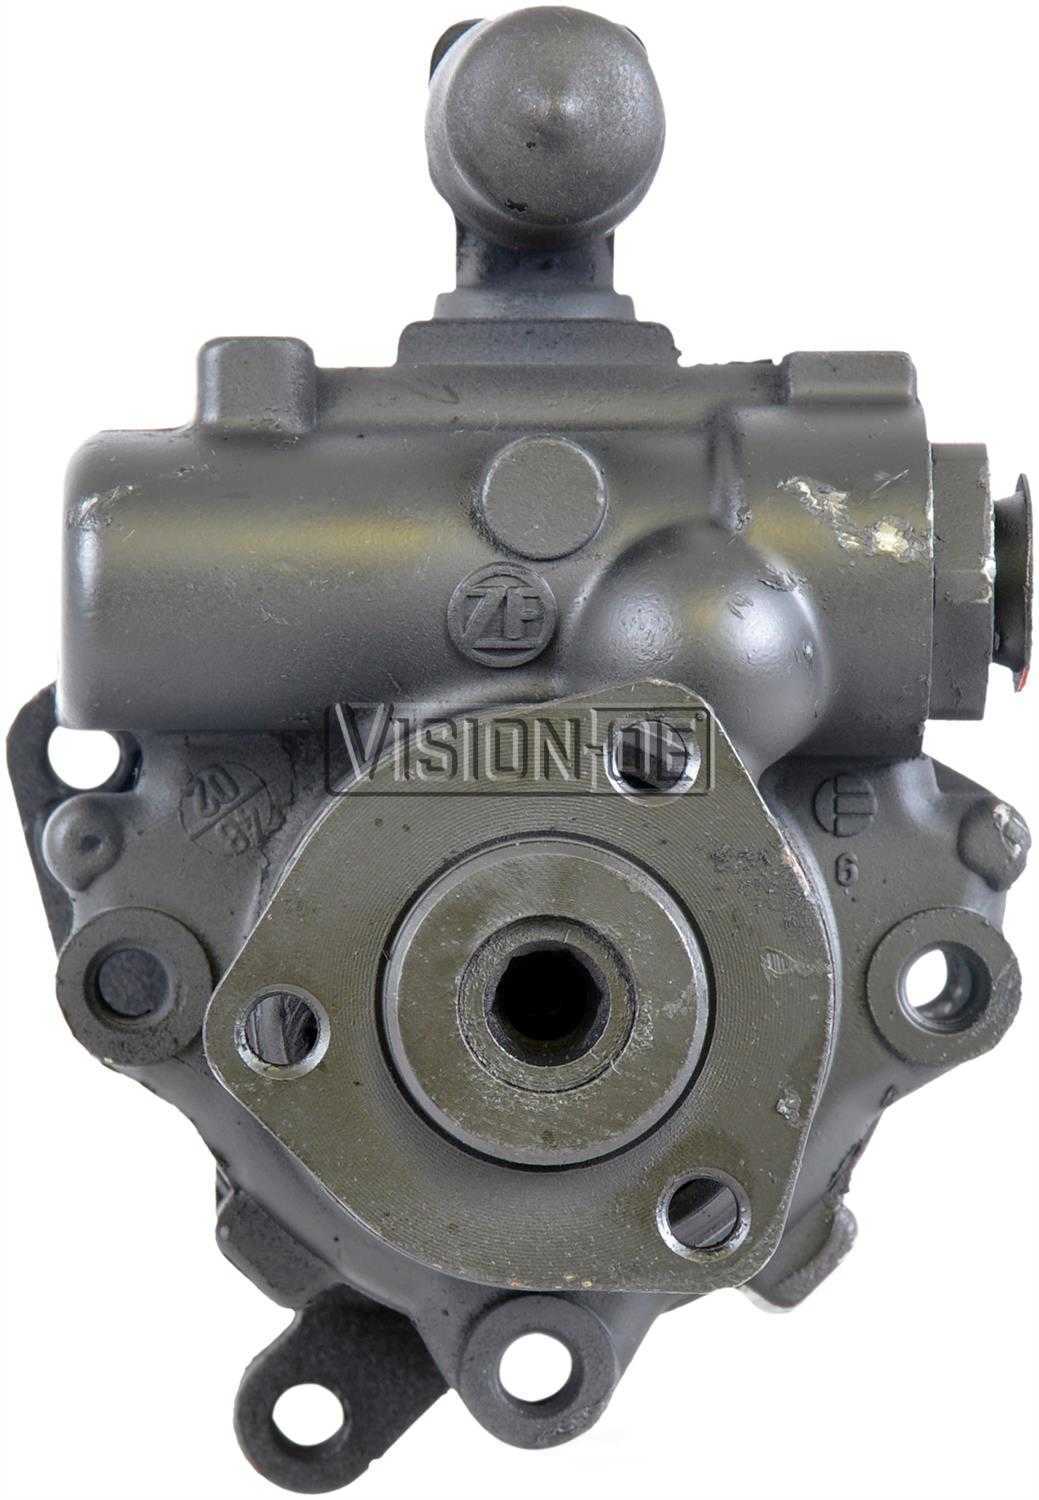 VISION-OE - Reman Power Steering Pump - VOE 990-1054